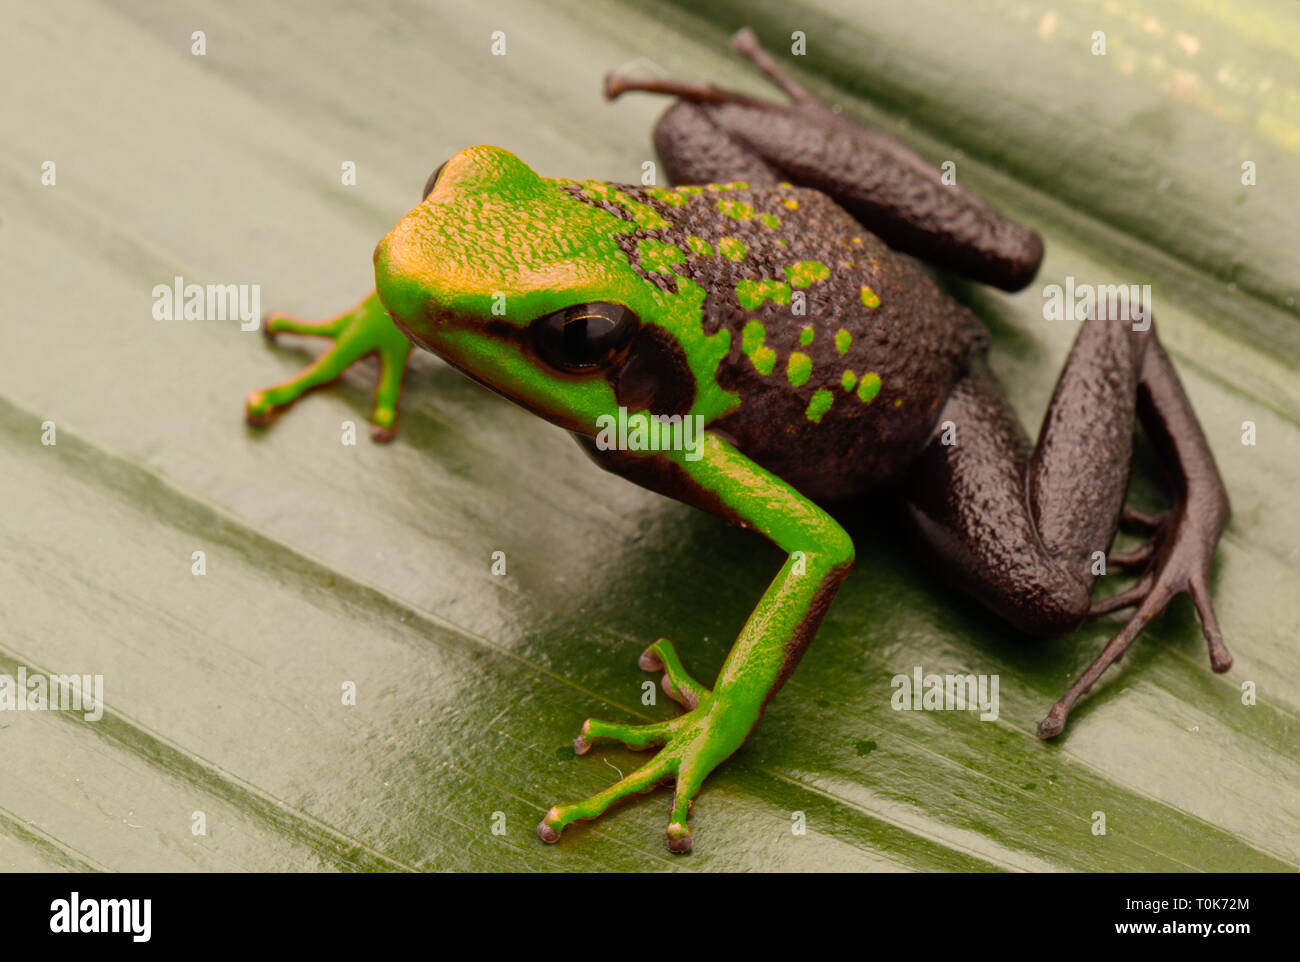 Poison dart Frog, ameerega Silverstonei. Ein tropischer Regenwald Tier von den Urwald des Amazonas in Peru. Stockfoto